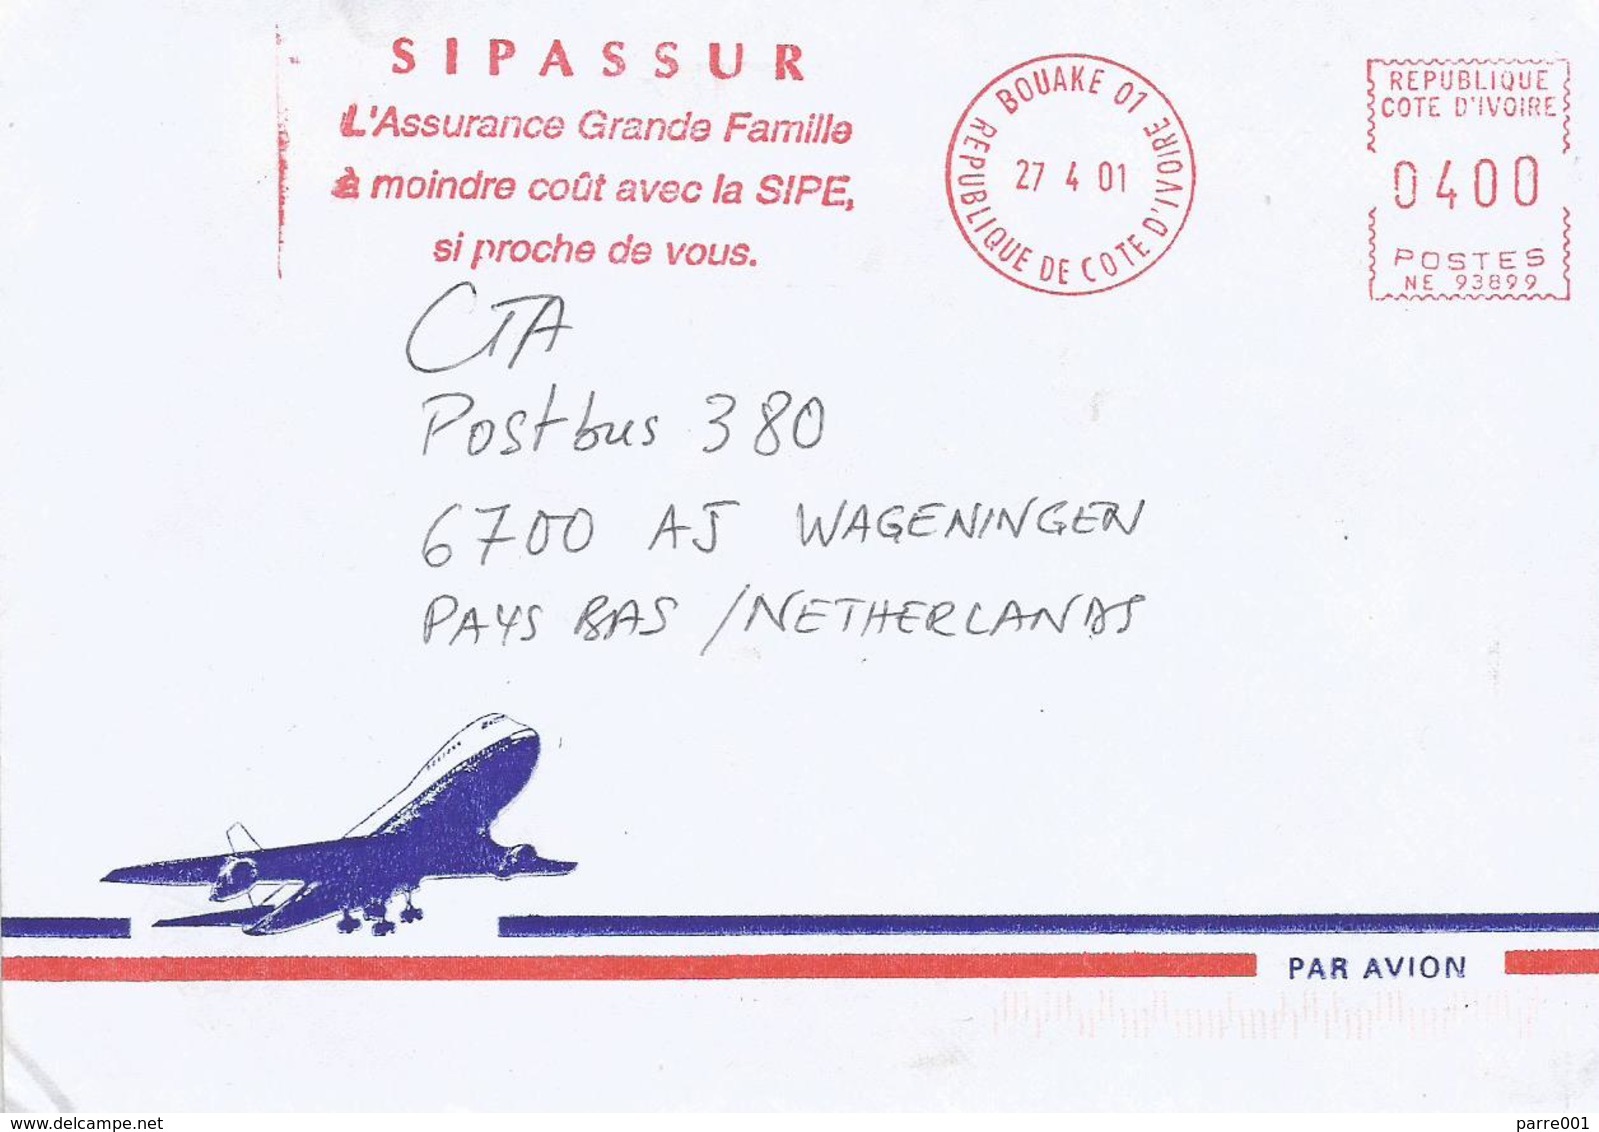 Cote D'Ivoire Ivory Coast 2001 Bouake 01 Post Office Meter Secap “NE” 93899 Insurance Slogan EMA Cover - Côte D'Ivoire (1960-...)